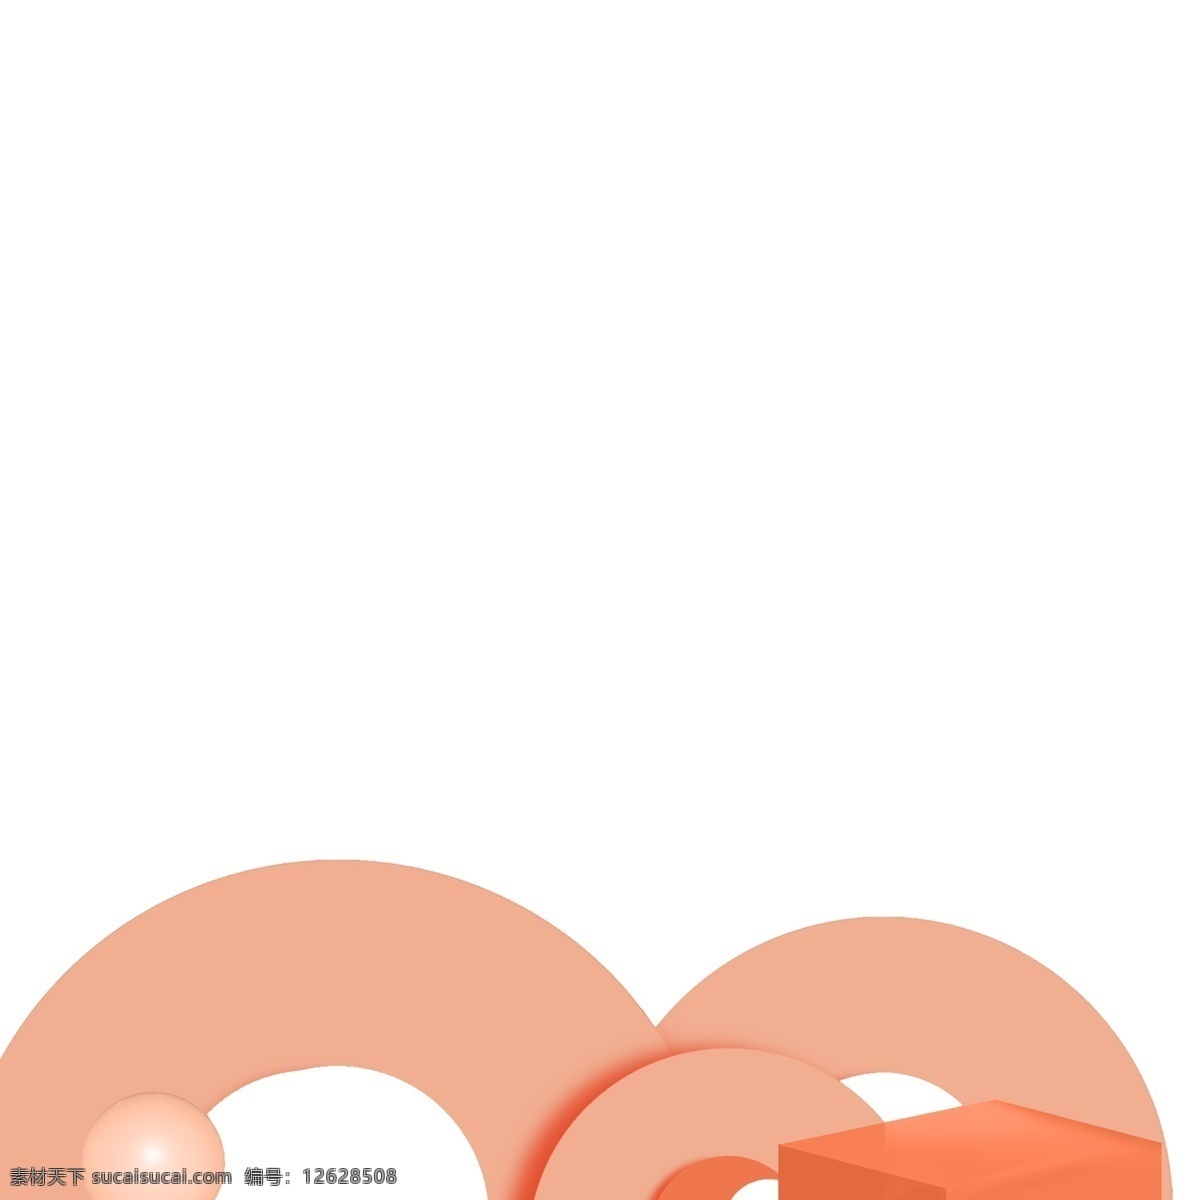 时尚 立体 台面 免 抠 图 美陈 时尚插画 3d立体圆球 卡通人物 动漫人物 立体圆球 圆圈 红色的圆球